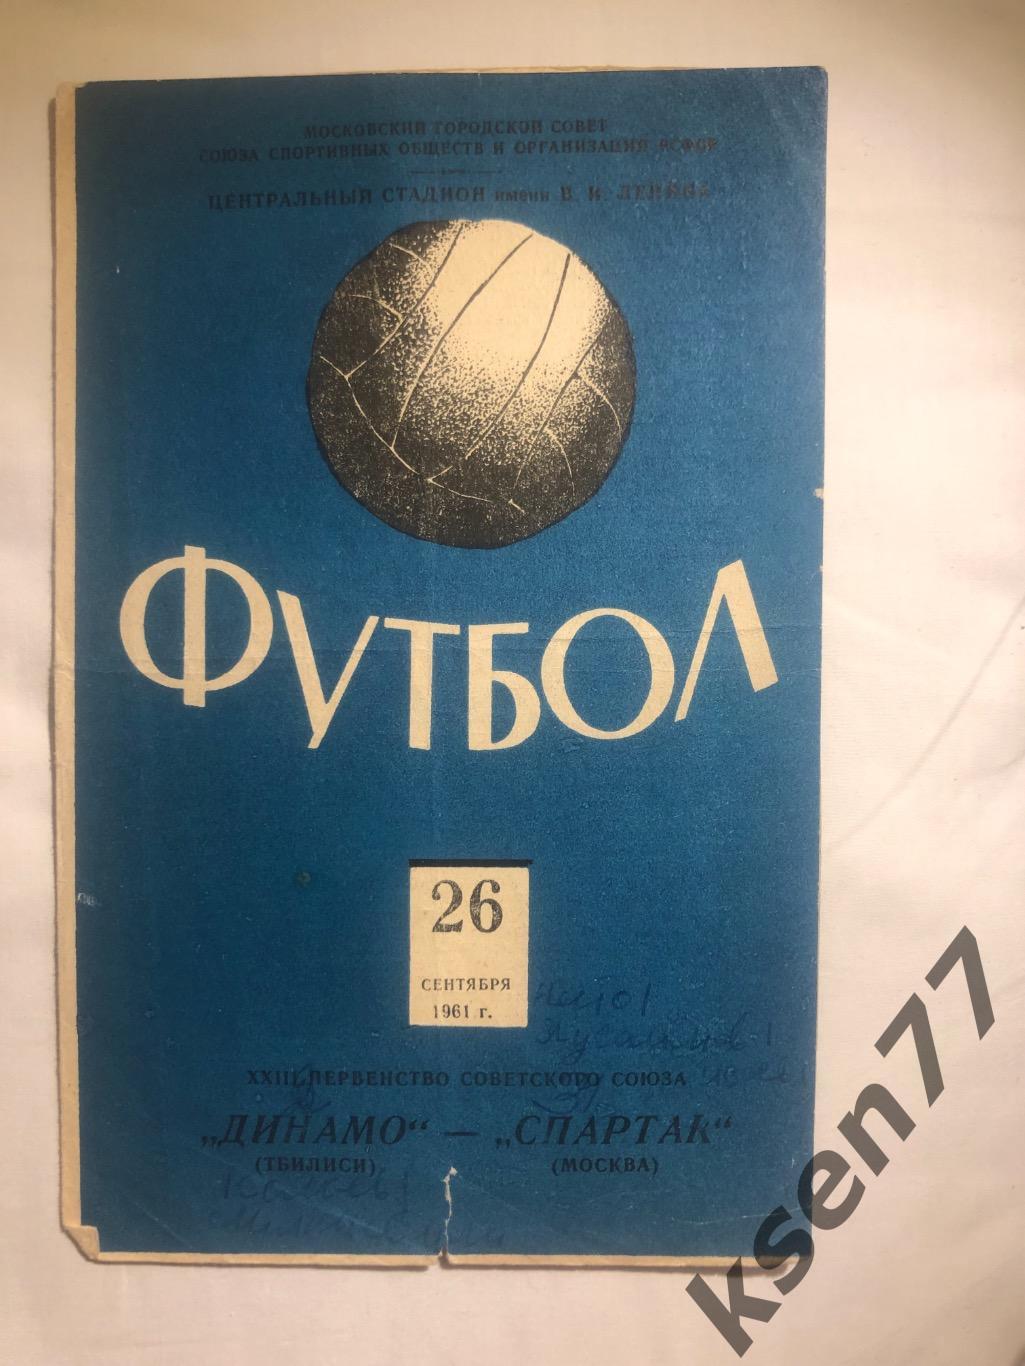 Спартак Москва - Динамо Тбилиси - 26.09.1961.